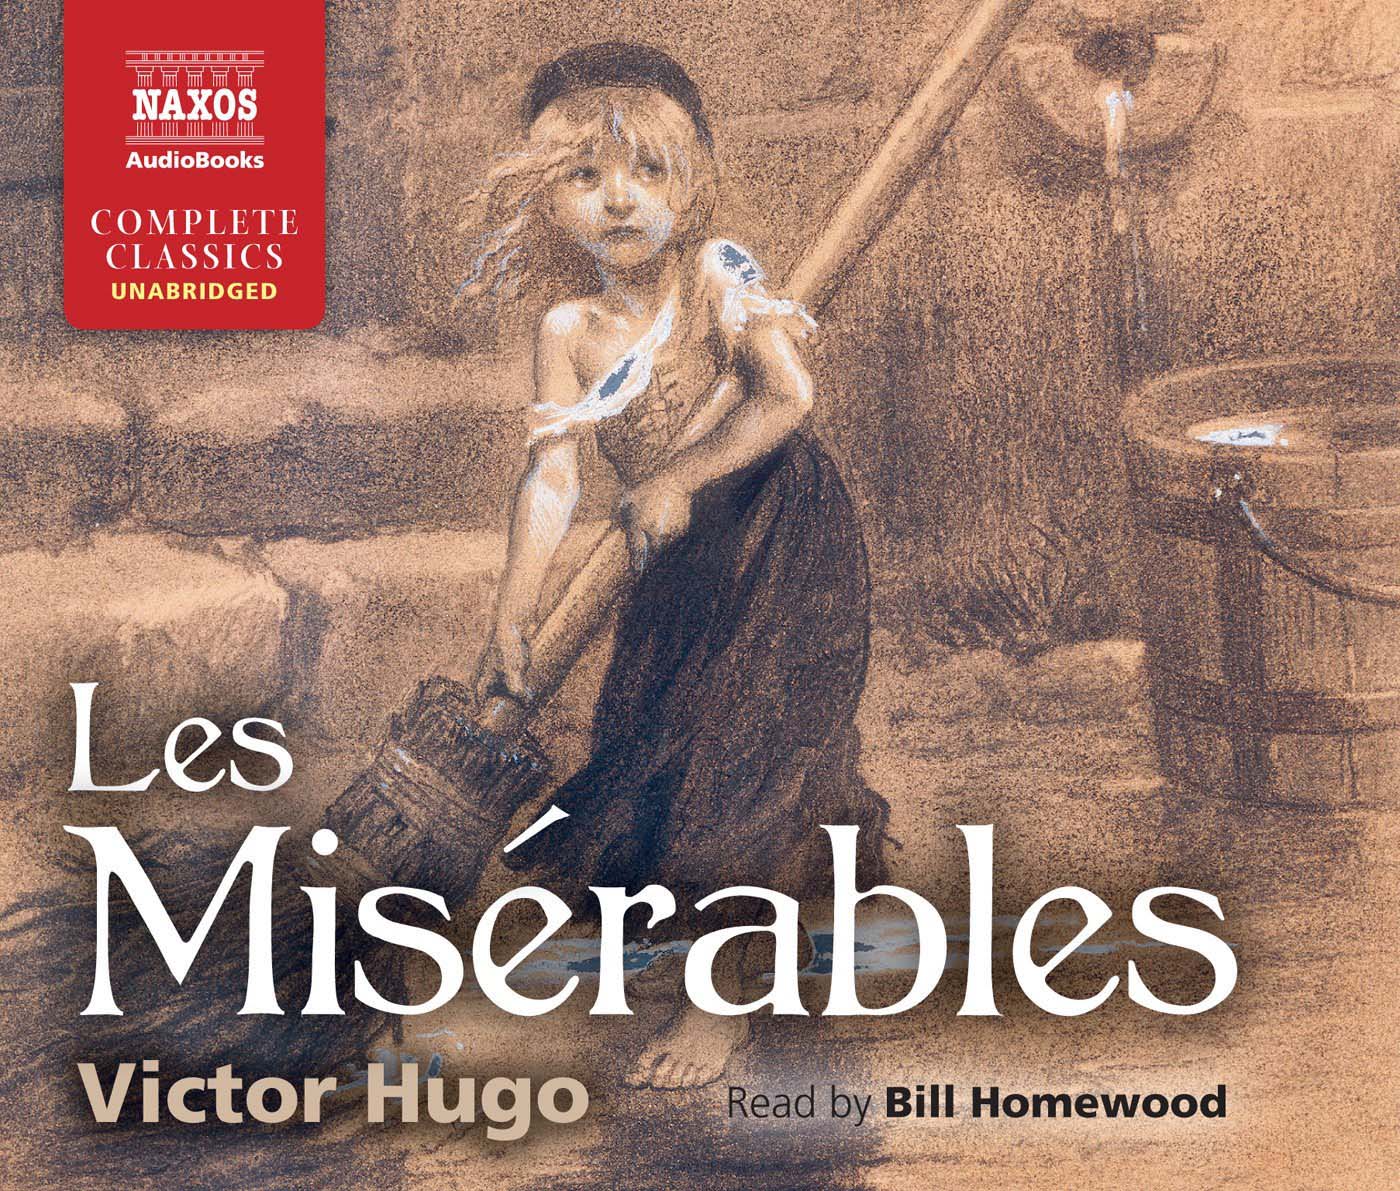 Audiolibro Bill Homewood - Les Miserables NUOVO SIGILLATO, EDIZIONE DEL 06/01/2015 SUBITO DISPONIBILE